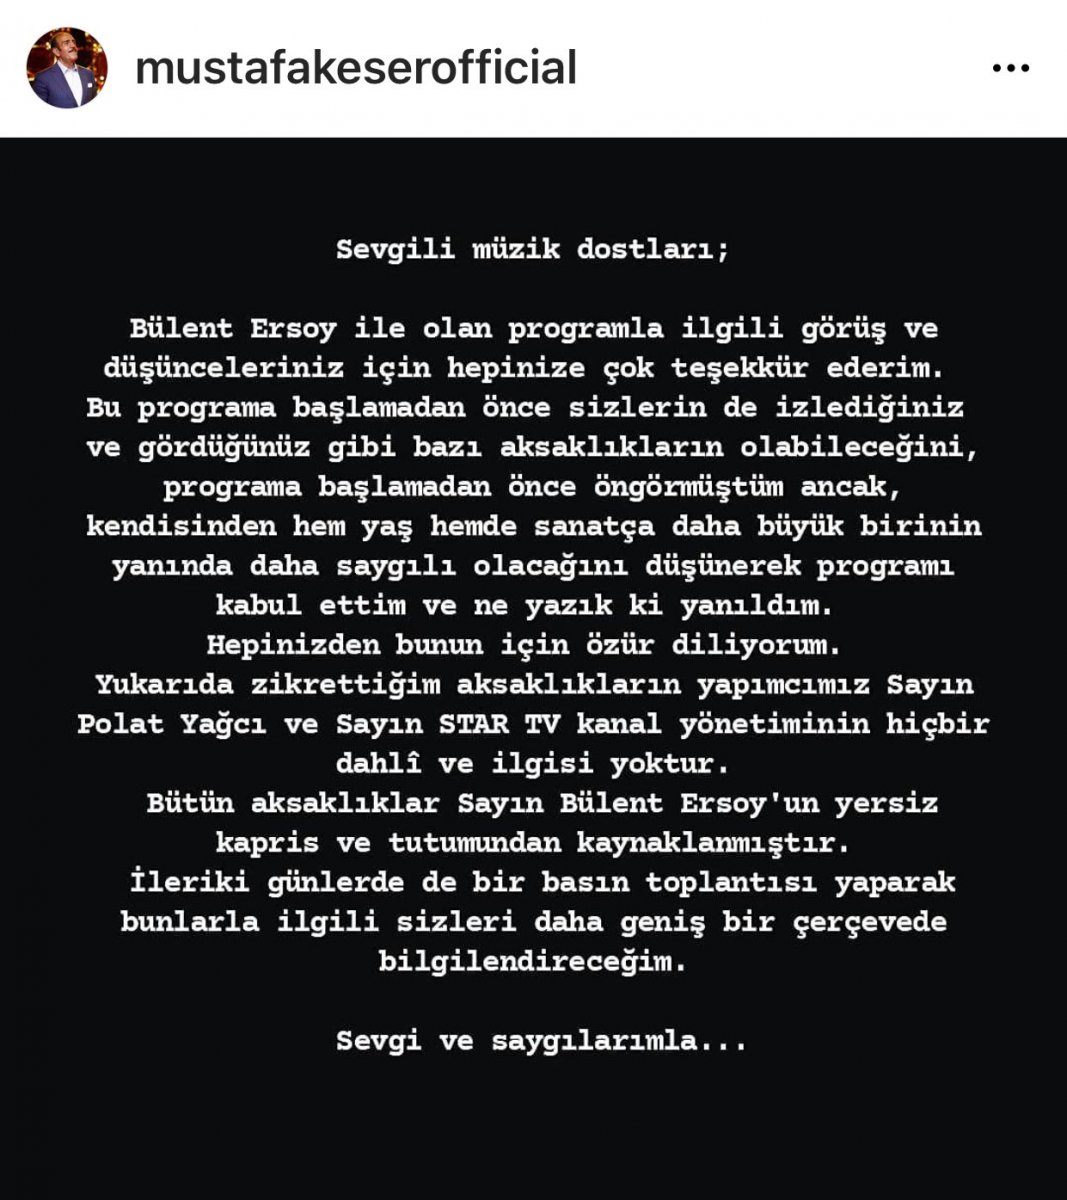 Mustafa Keser: Tüm aksaklıklar Bülent Ersoy un yersiz kaprisinden kaynaklandı #2